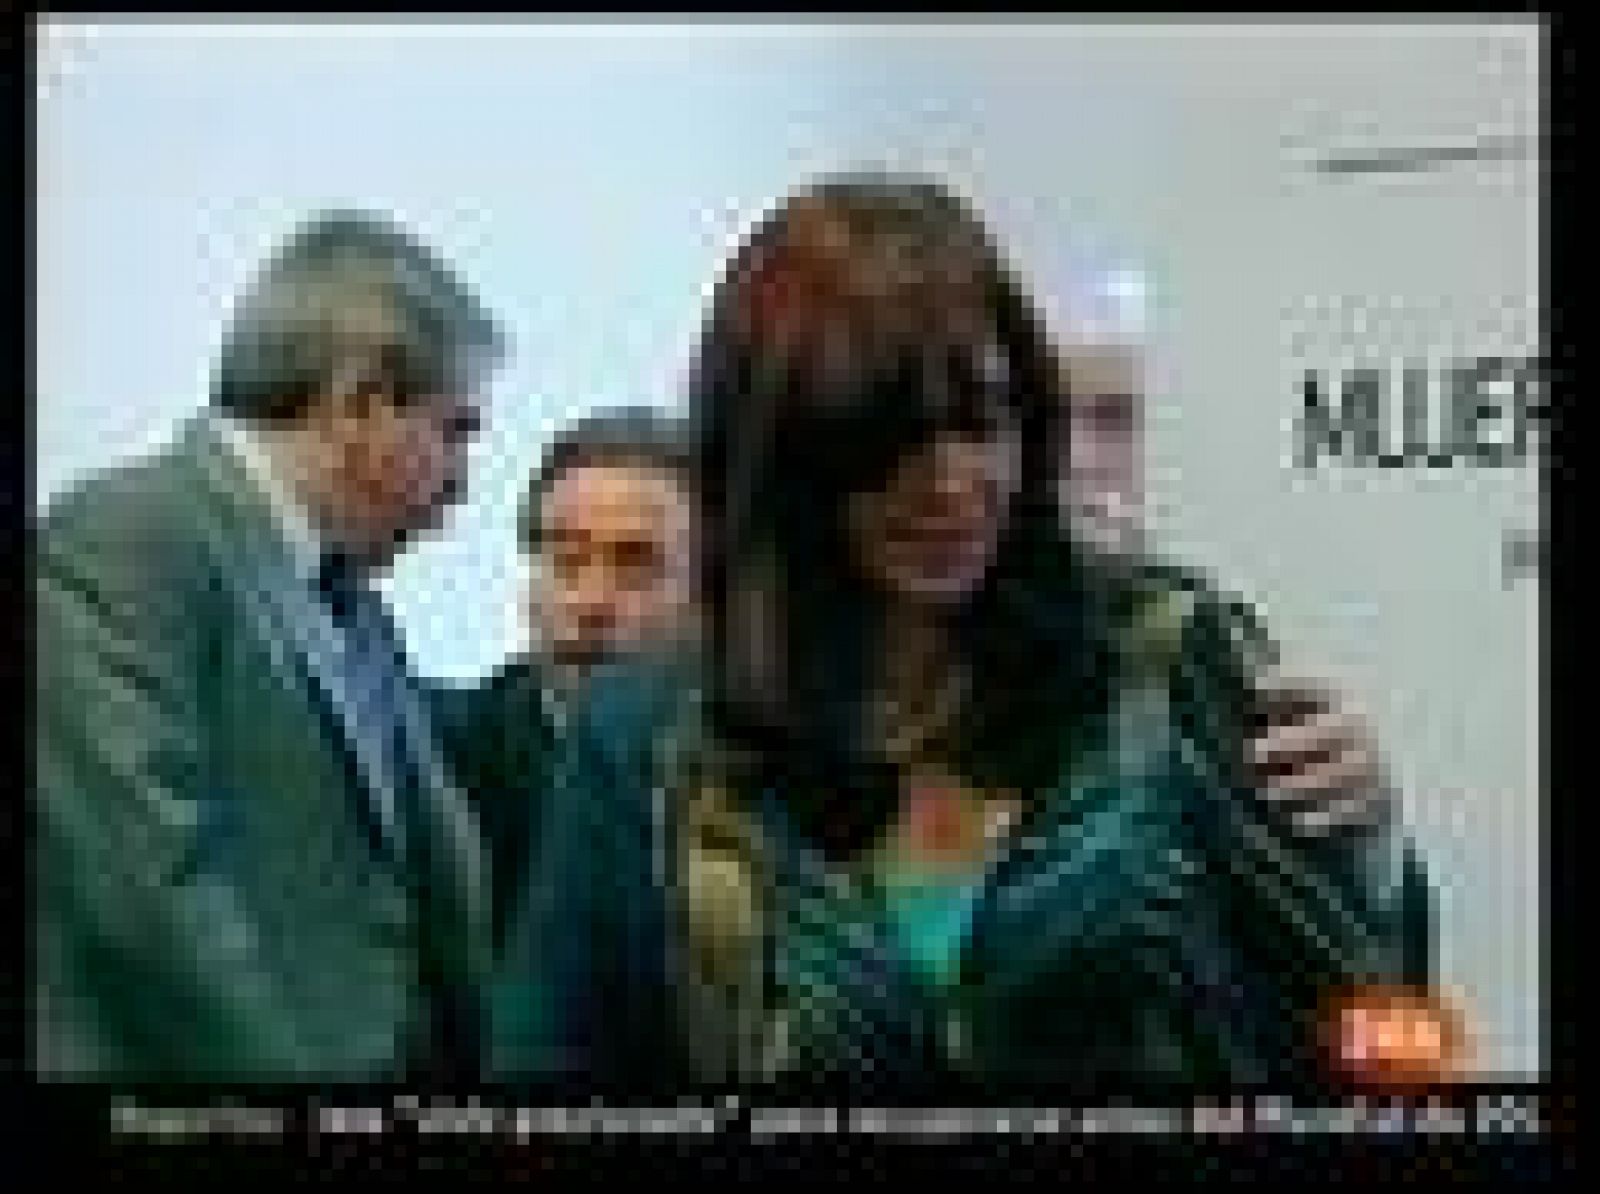 La Fiscalía del Estado argentino ha denunciado ante la Justicia supuestas amenazas a la presidenta Cristina Fernández, por medio de interferencias en el sistema de comunicaciones del helicóptero que usa para trasladarse. Podía escucharse: "Maten a la yegua", "mátenla" (14/12/09).